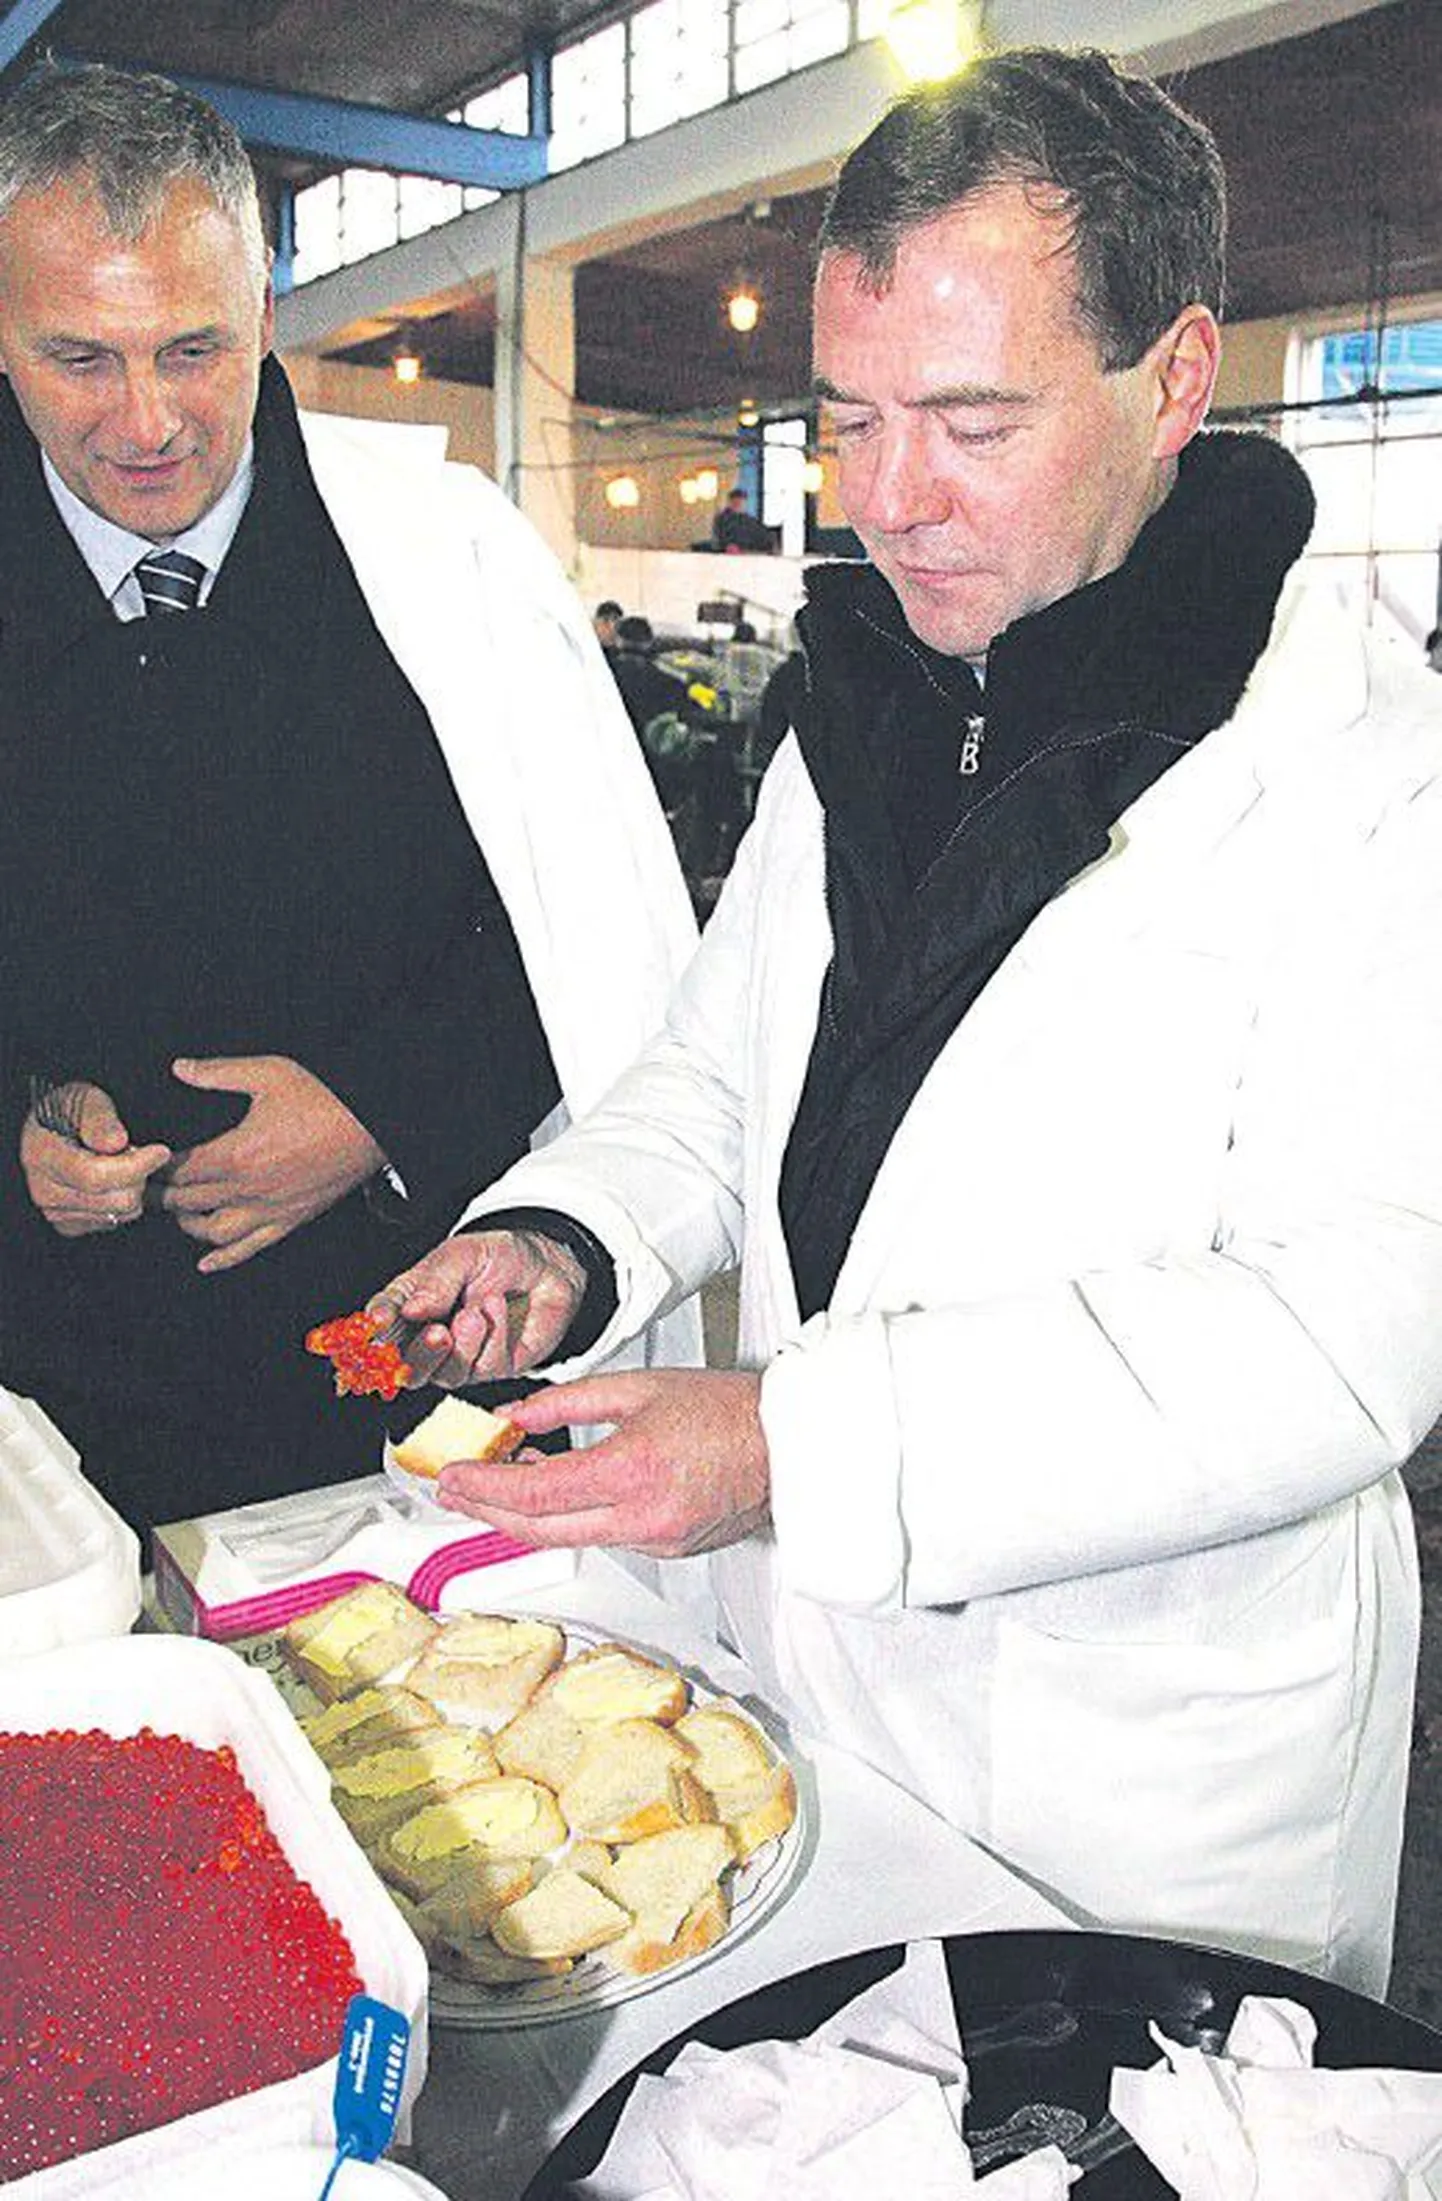 Дмитрий Медведев (справа), прилетев на остров Кунашир, посетил вместе с губернатором Сахалинской области Александром Хорошавиным рыбокомбинат, где их угощали красной икрой.